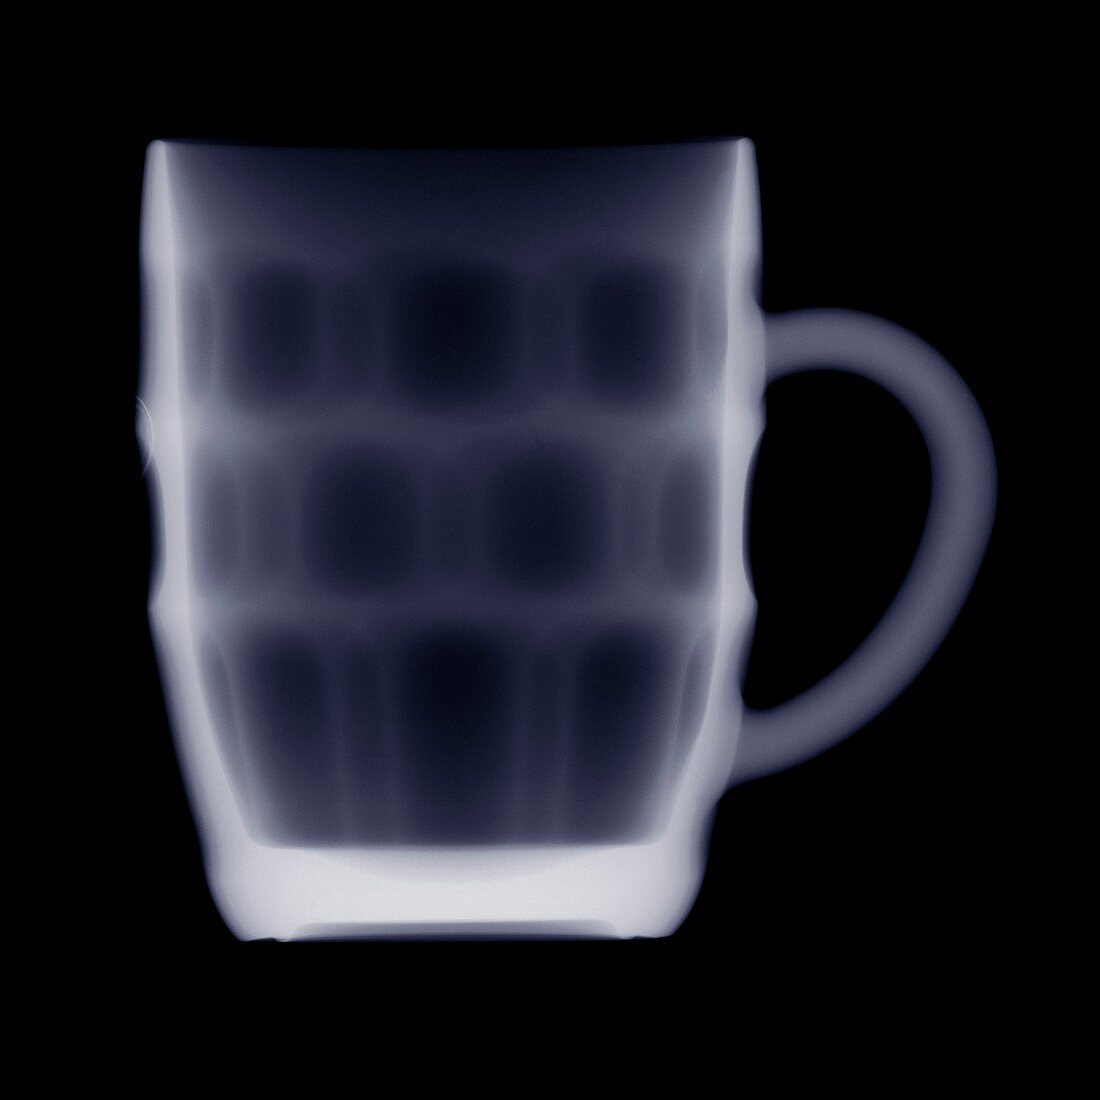 British pint mug, X-ray